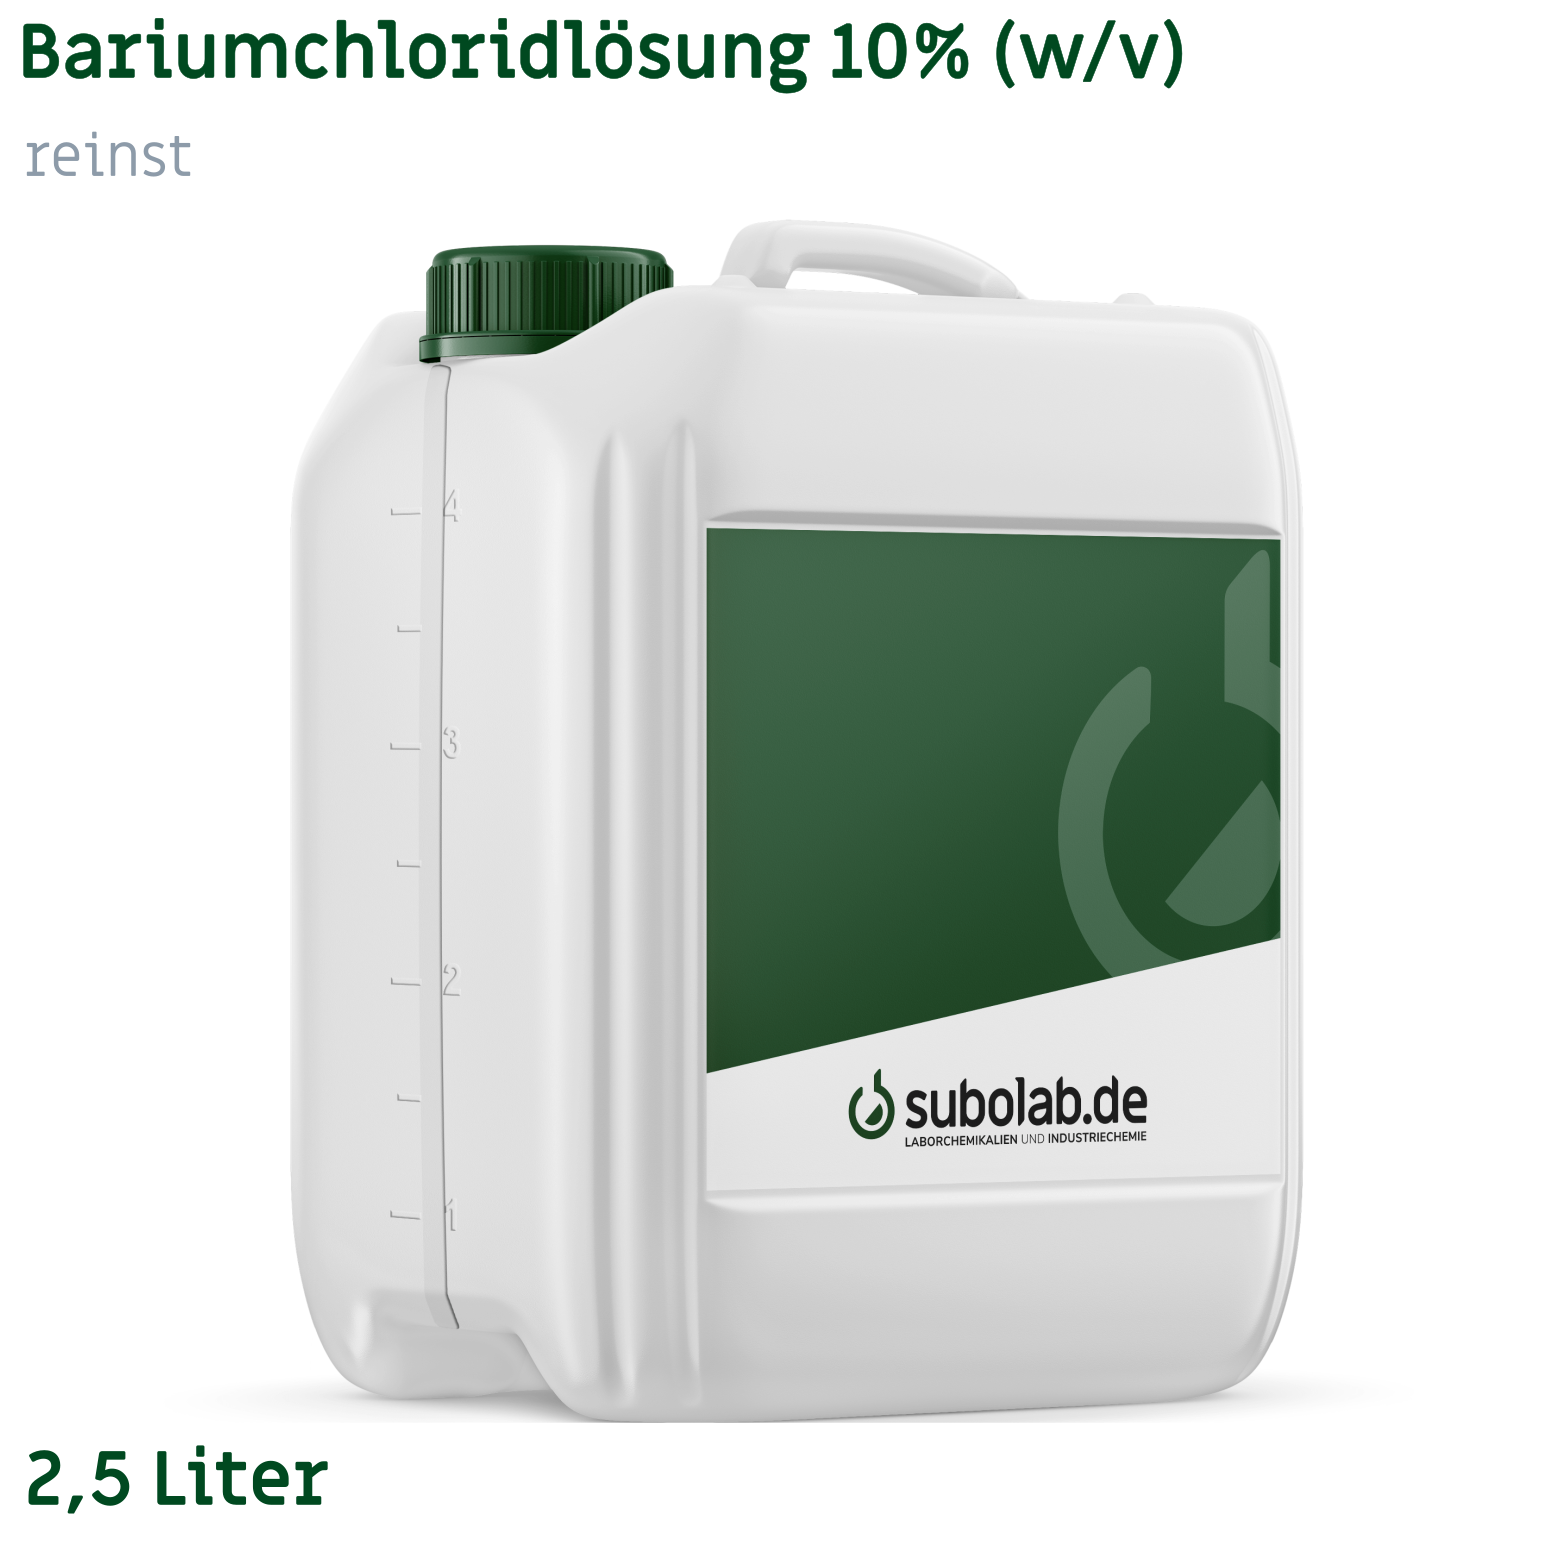 Bild von Bariumchloridlösung 10% (w/v) reinst (2,5 Liter)